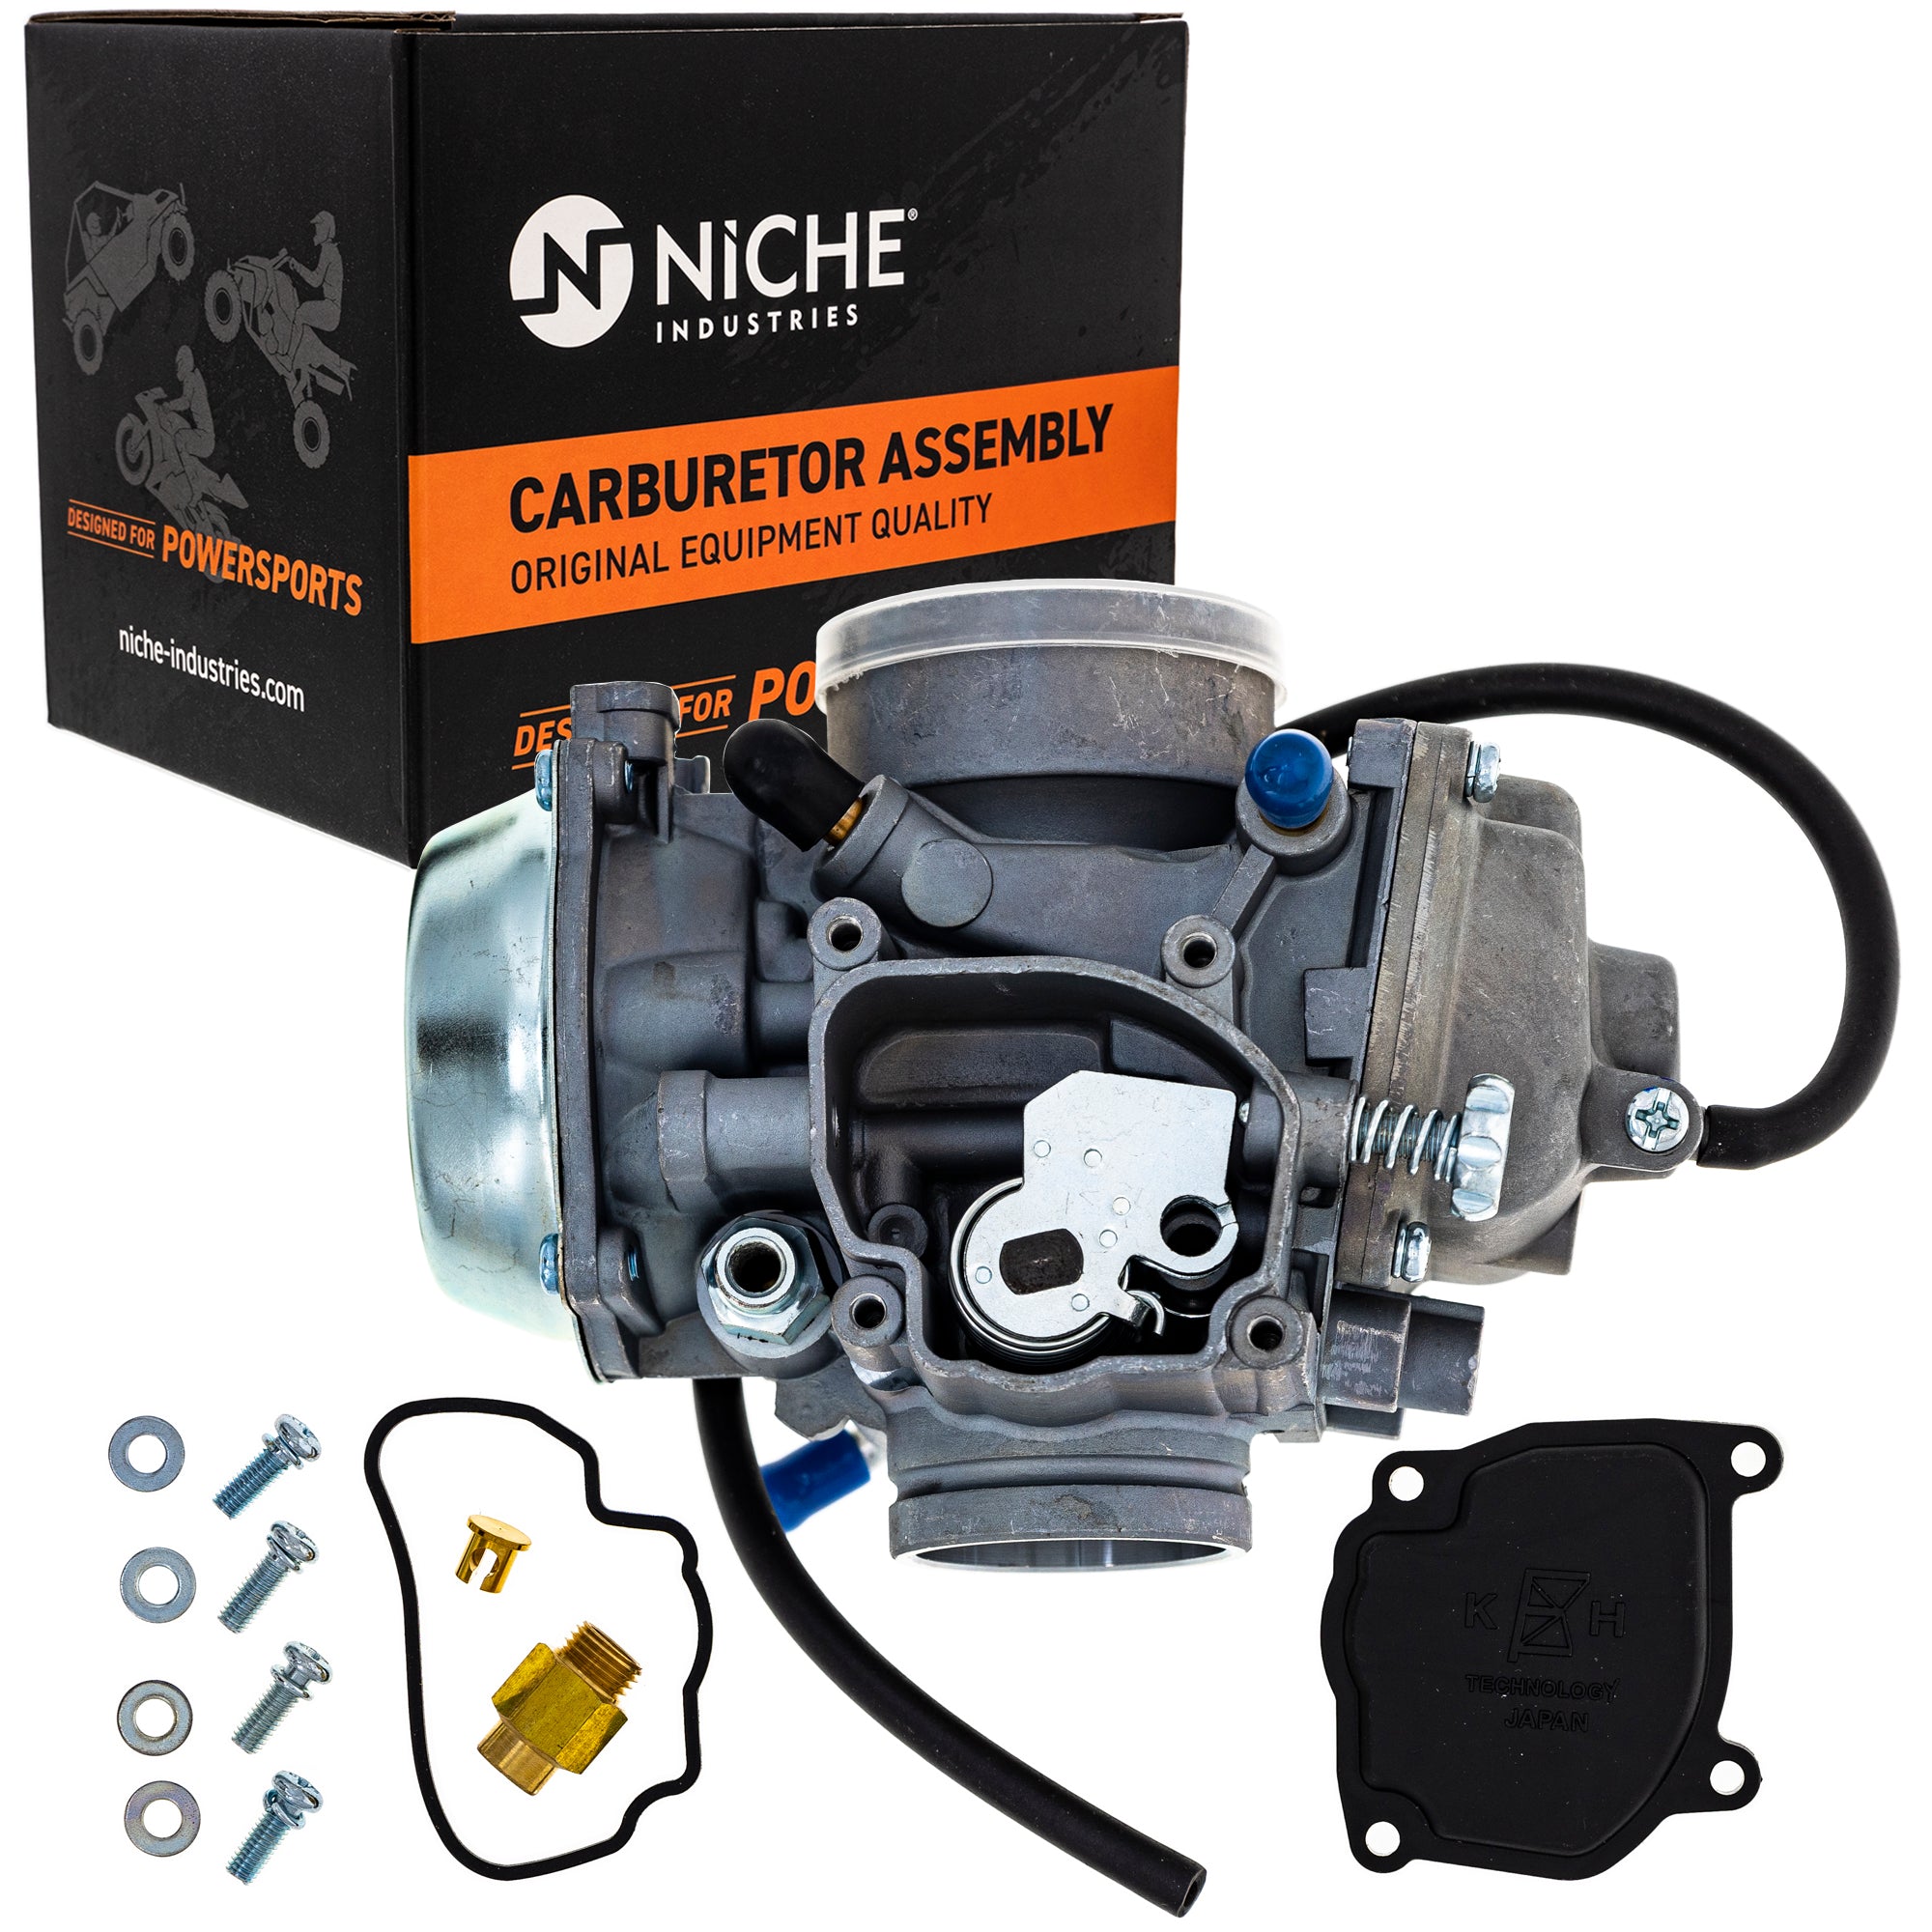 NICHE 519-KCR2297B Carburetor Assembly for Polaris Sportsman Hawkeye